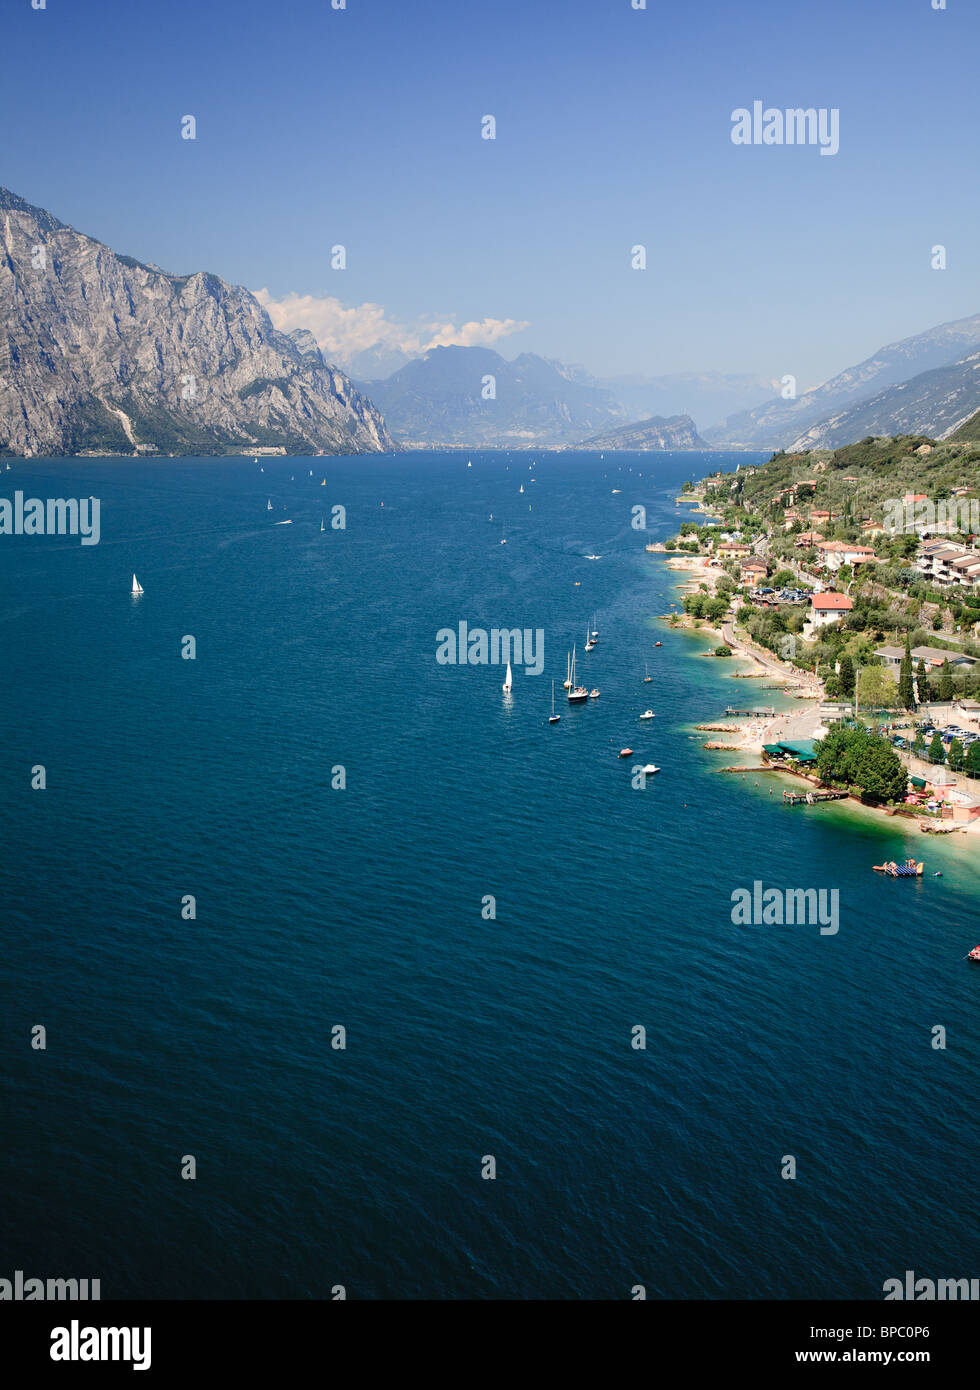 Vista del Lago de Garda, Italia, Europa desde las murallas del castillo de Malcesine Foto de stock